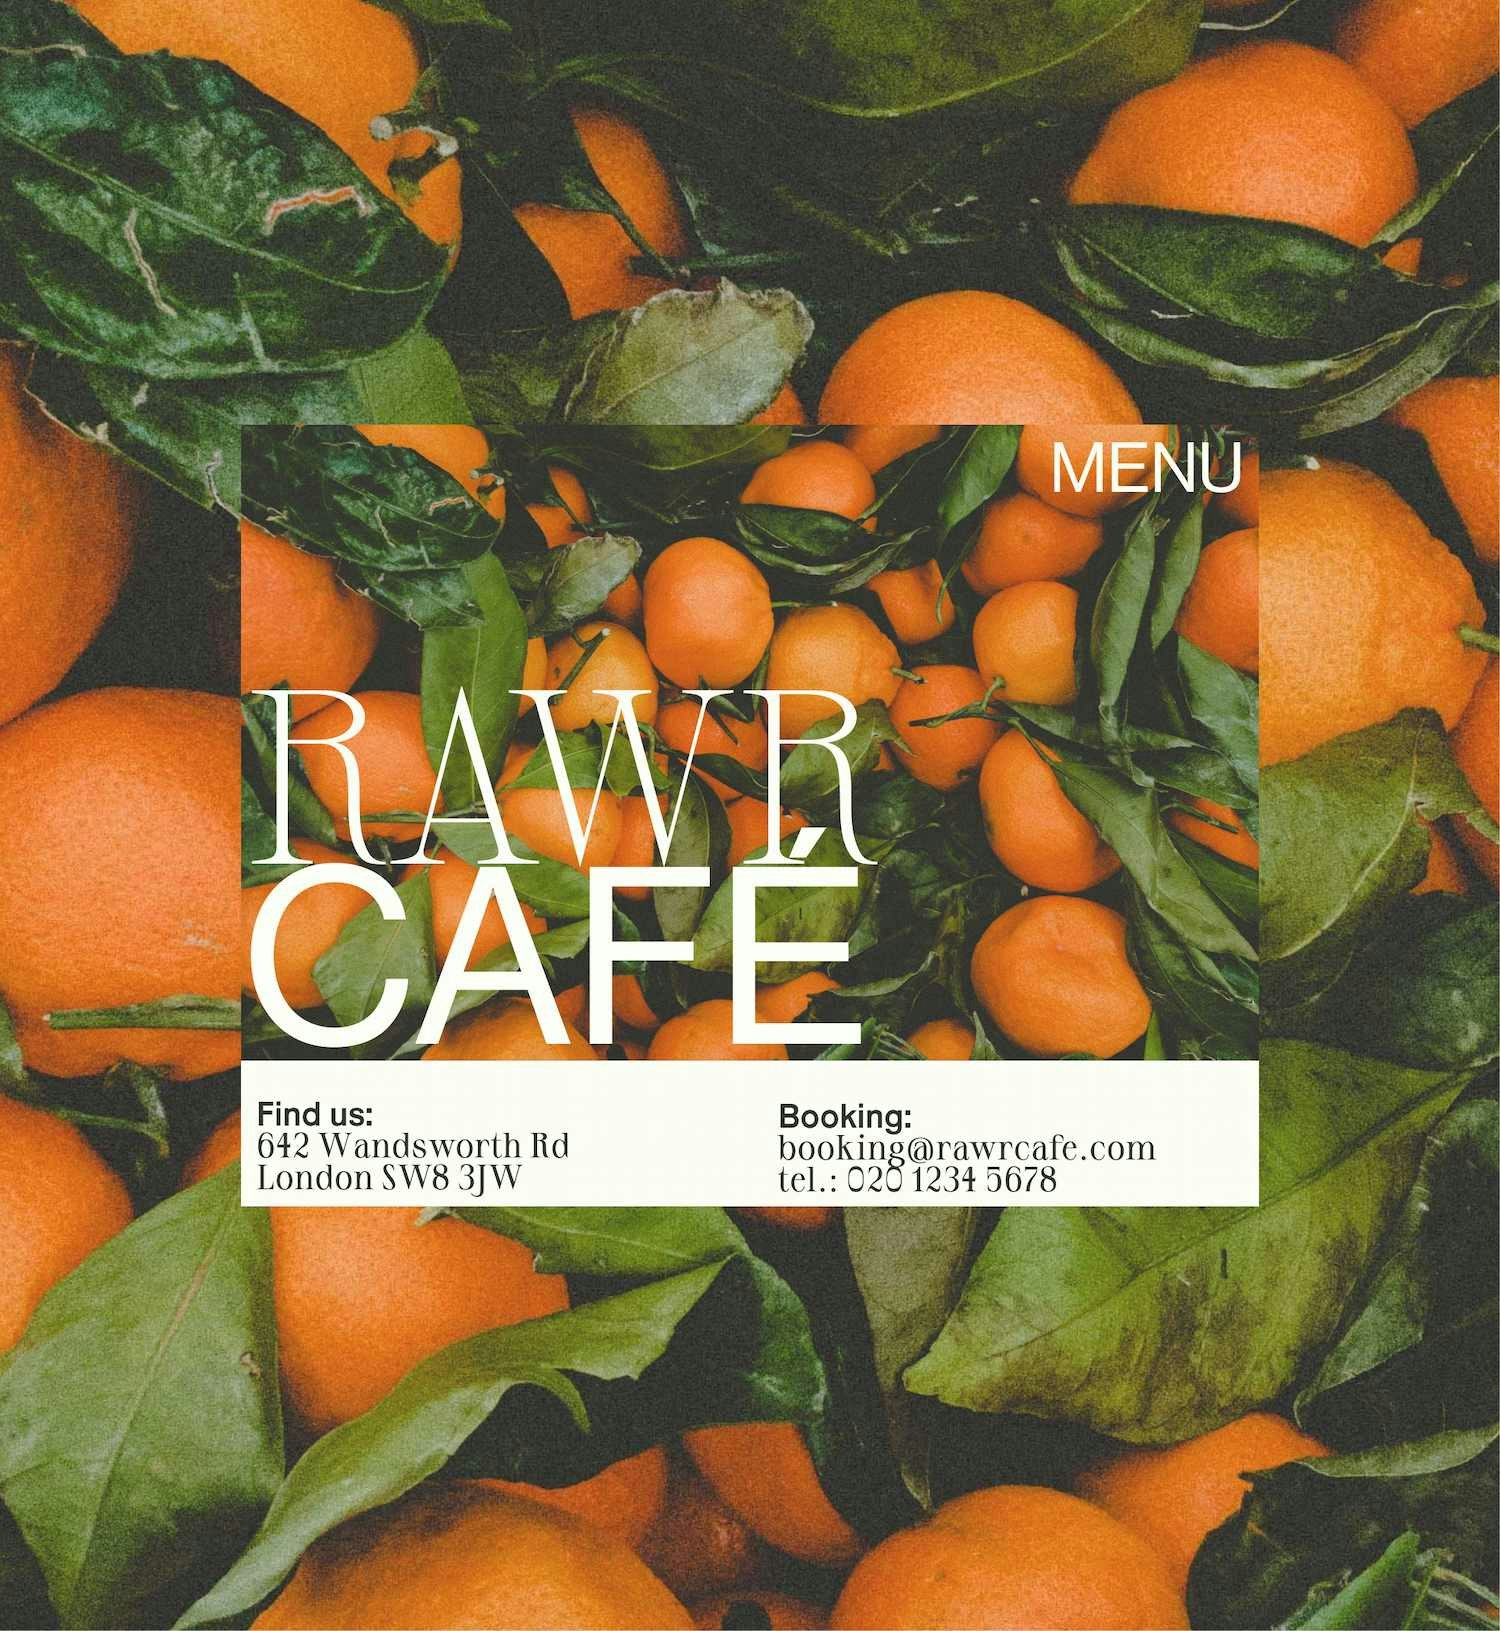 London cafe website design